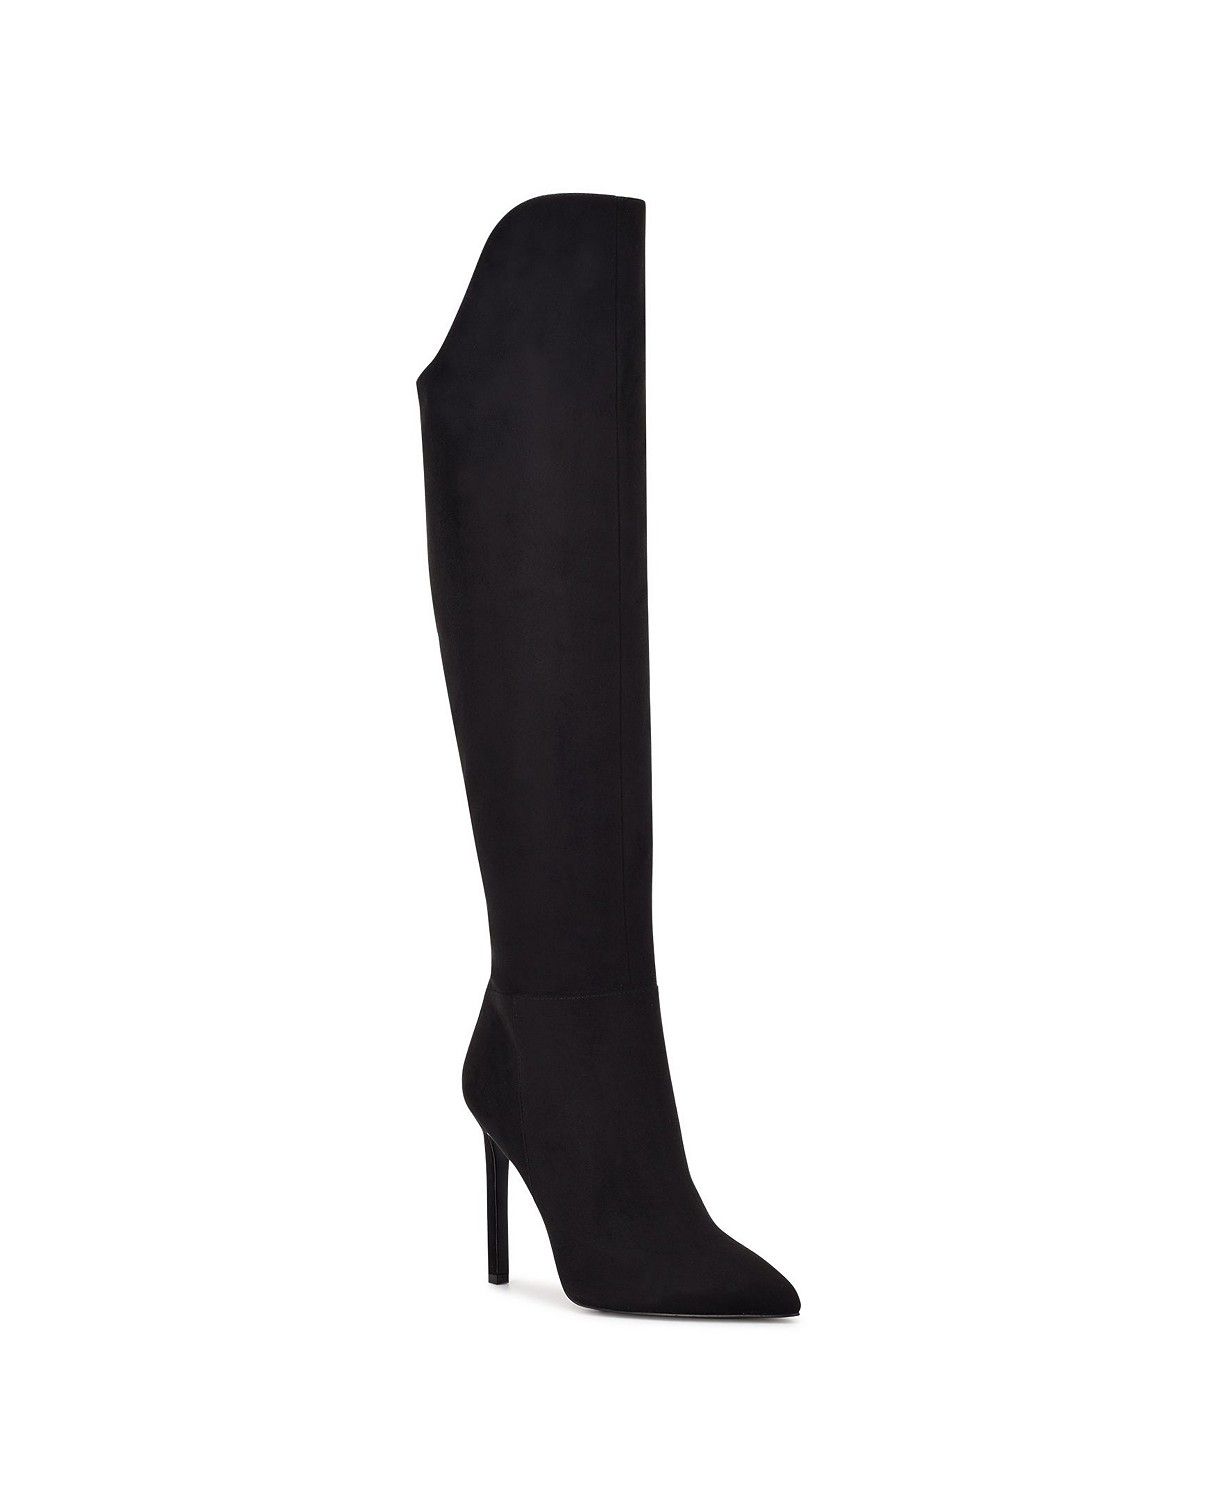 Nine West Women's Teleena Over the Knee Heel Boots & Reviews - Boots - Shoes - Macy's | Macys (US)